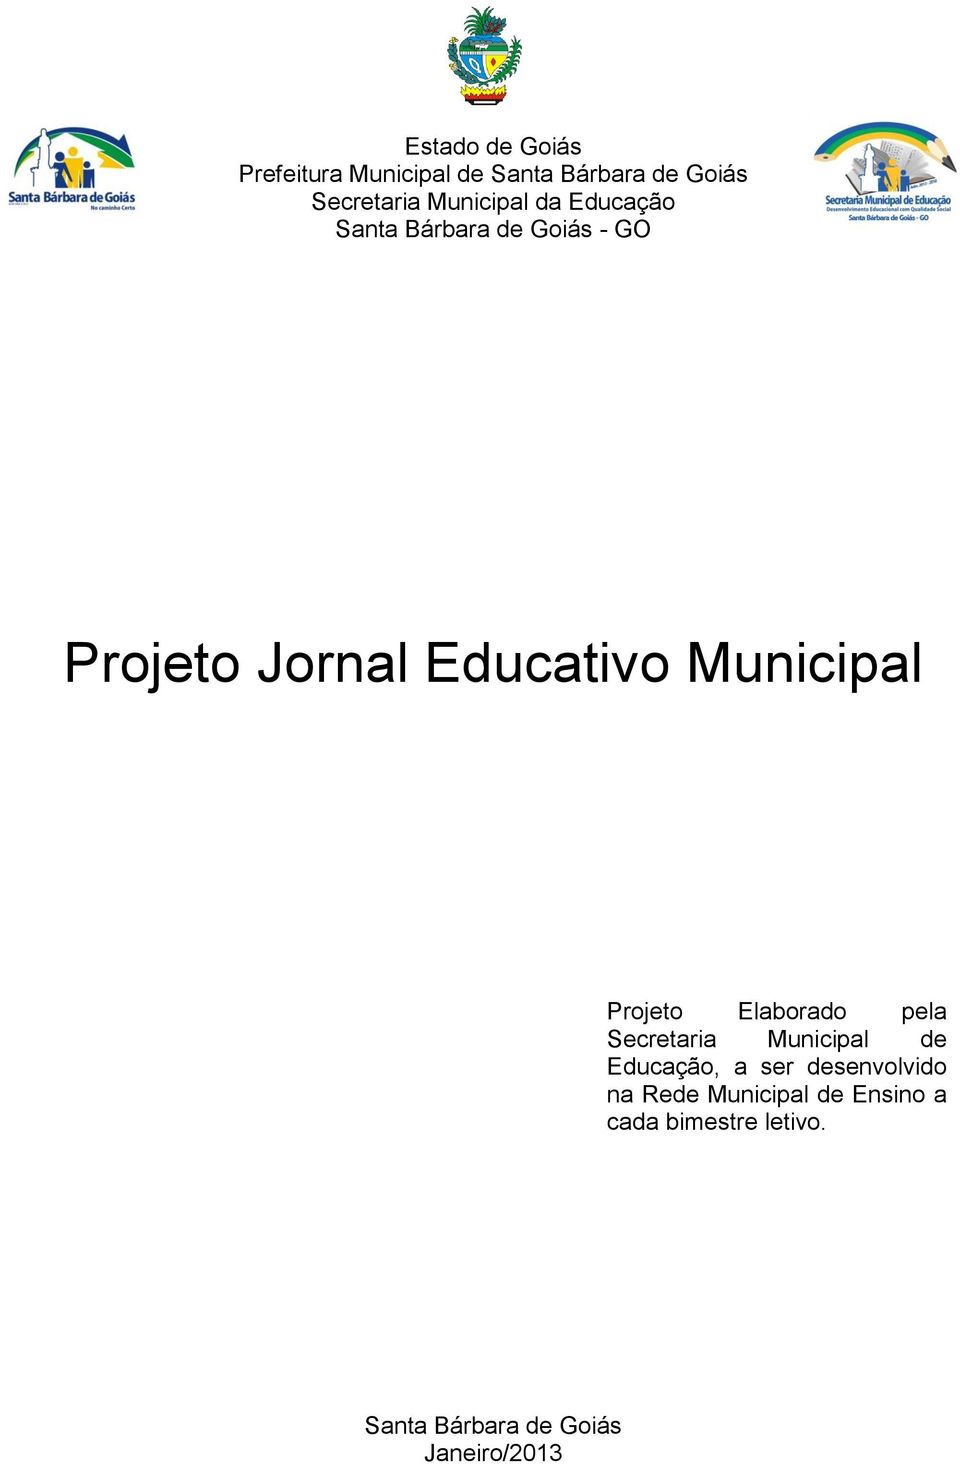 Municipal Projeto Elaborado pela Secretaria Municipal de Educação, a ser